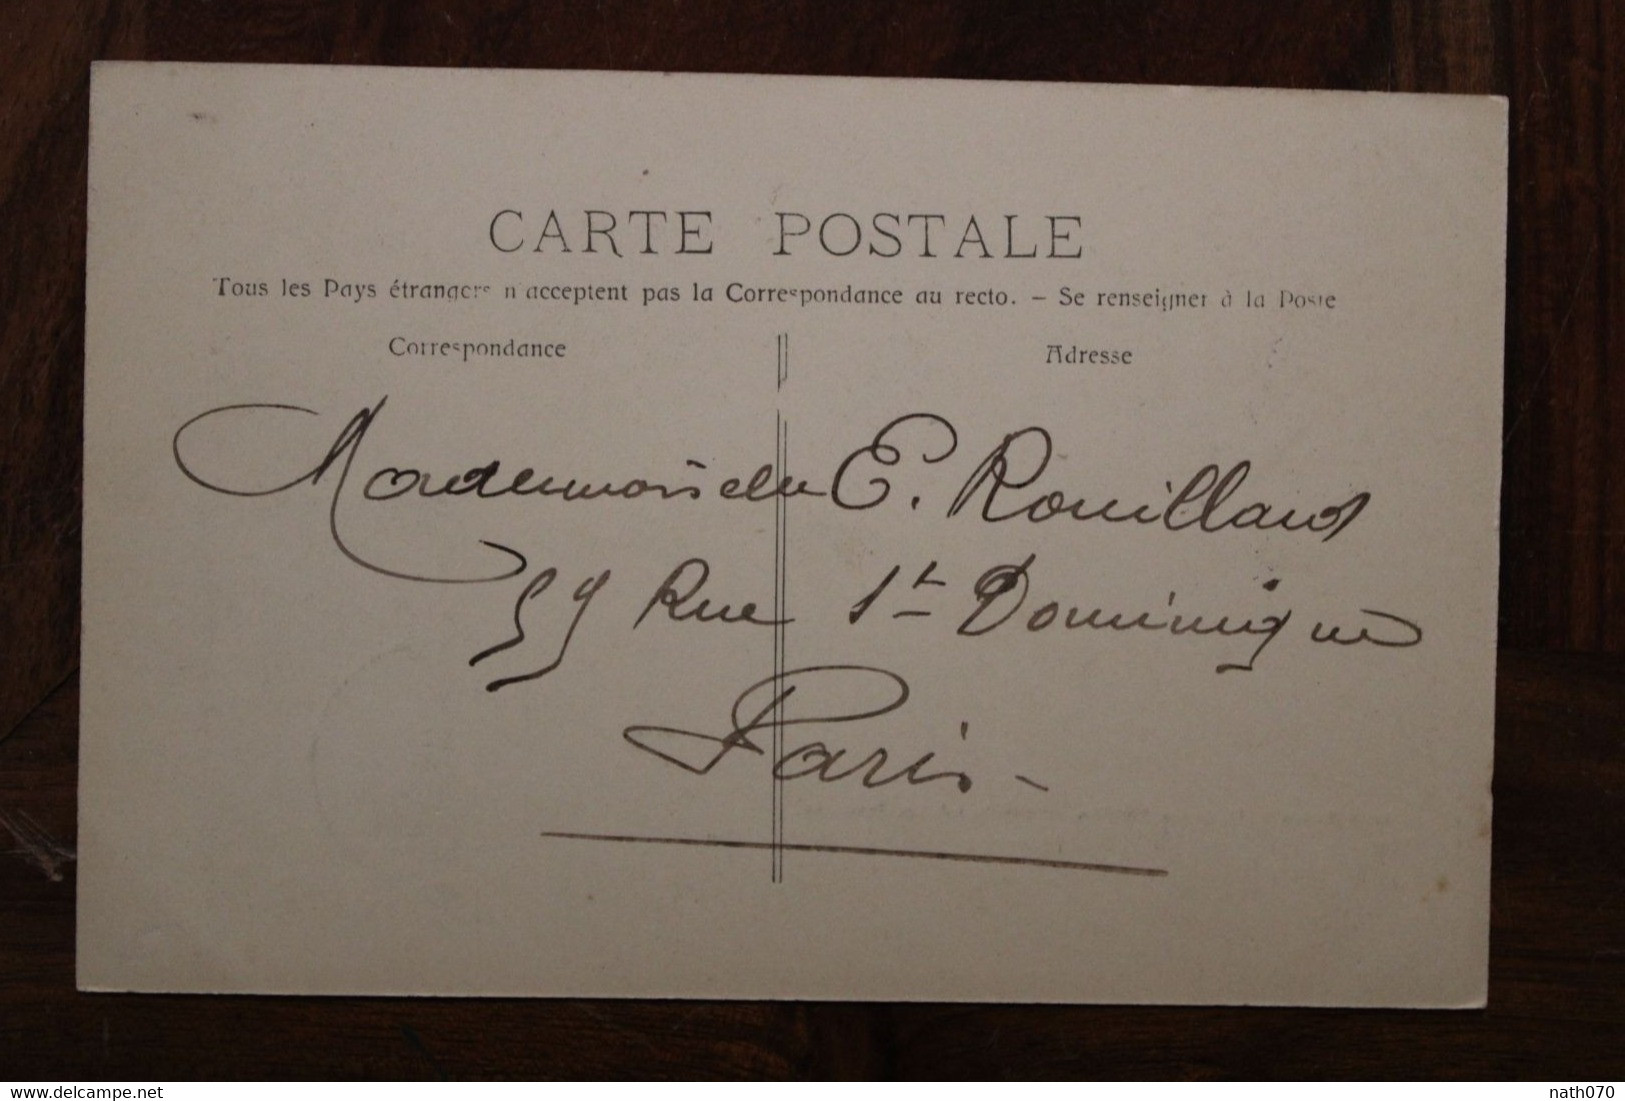 Madagascar 1916 France Cpa Ak Majunga Pointe Du Caiman Cover Colonie Cachet Bleu - Cartas & Documentos